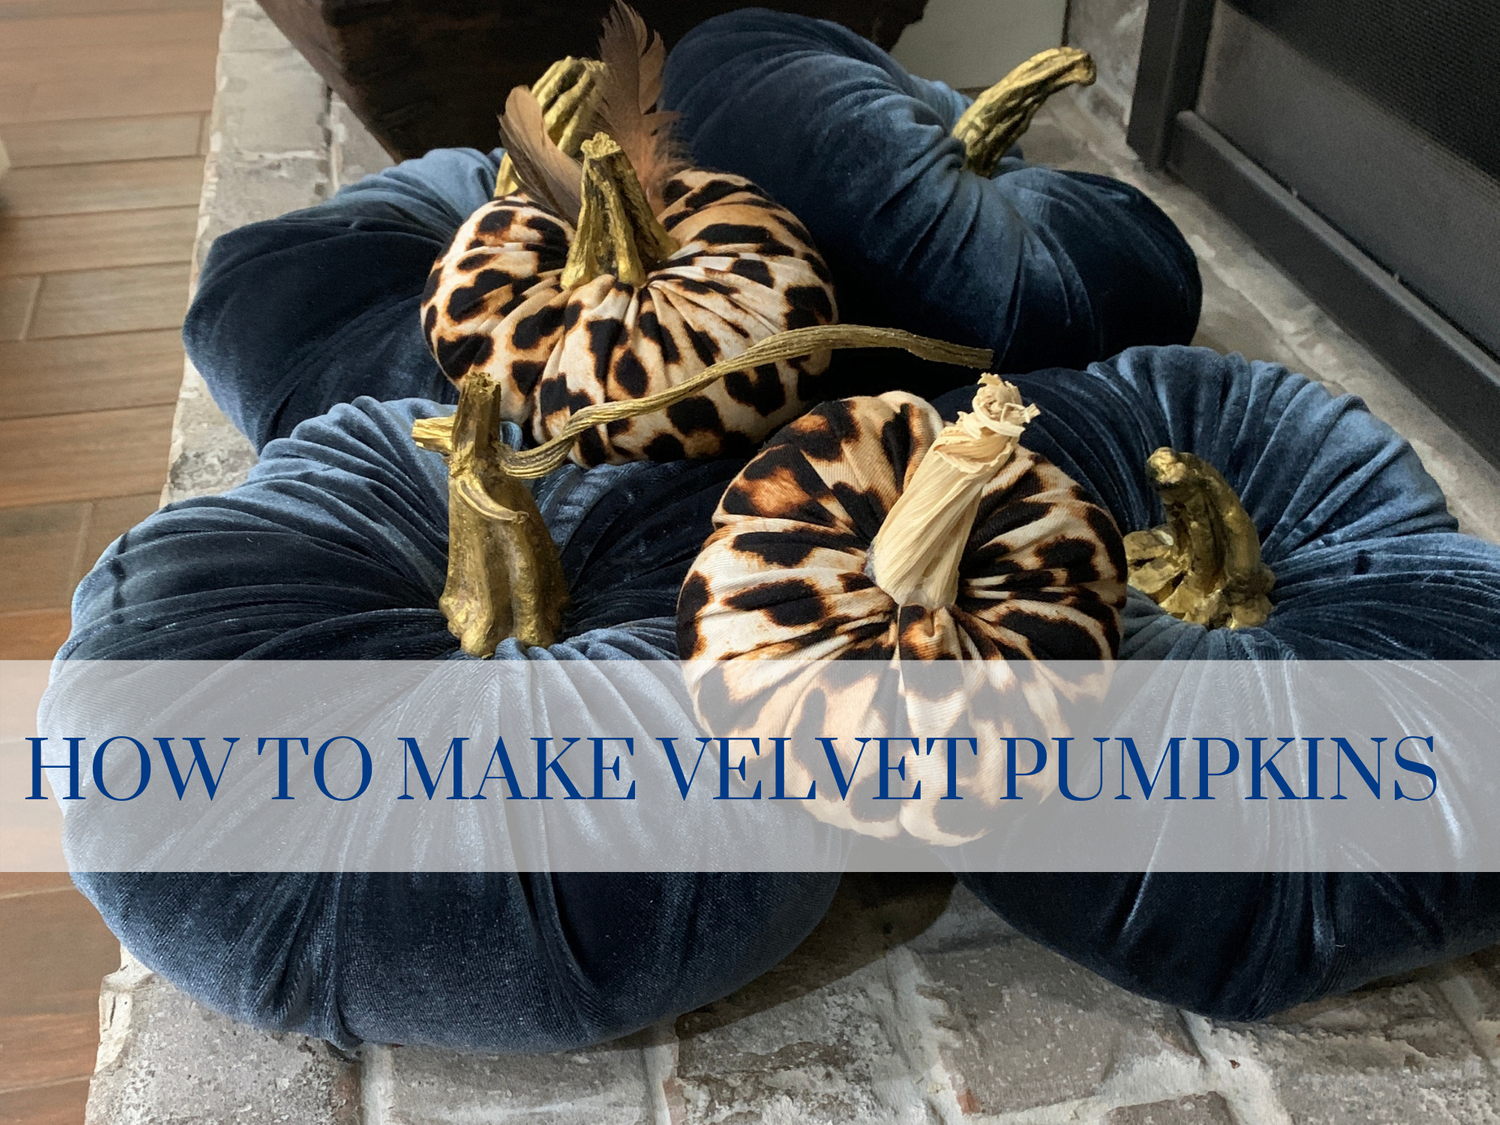 How to Make Velvet Pumpkins